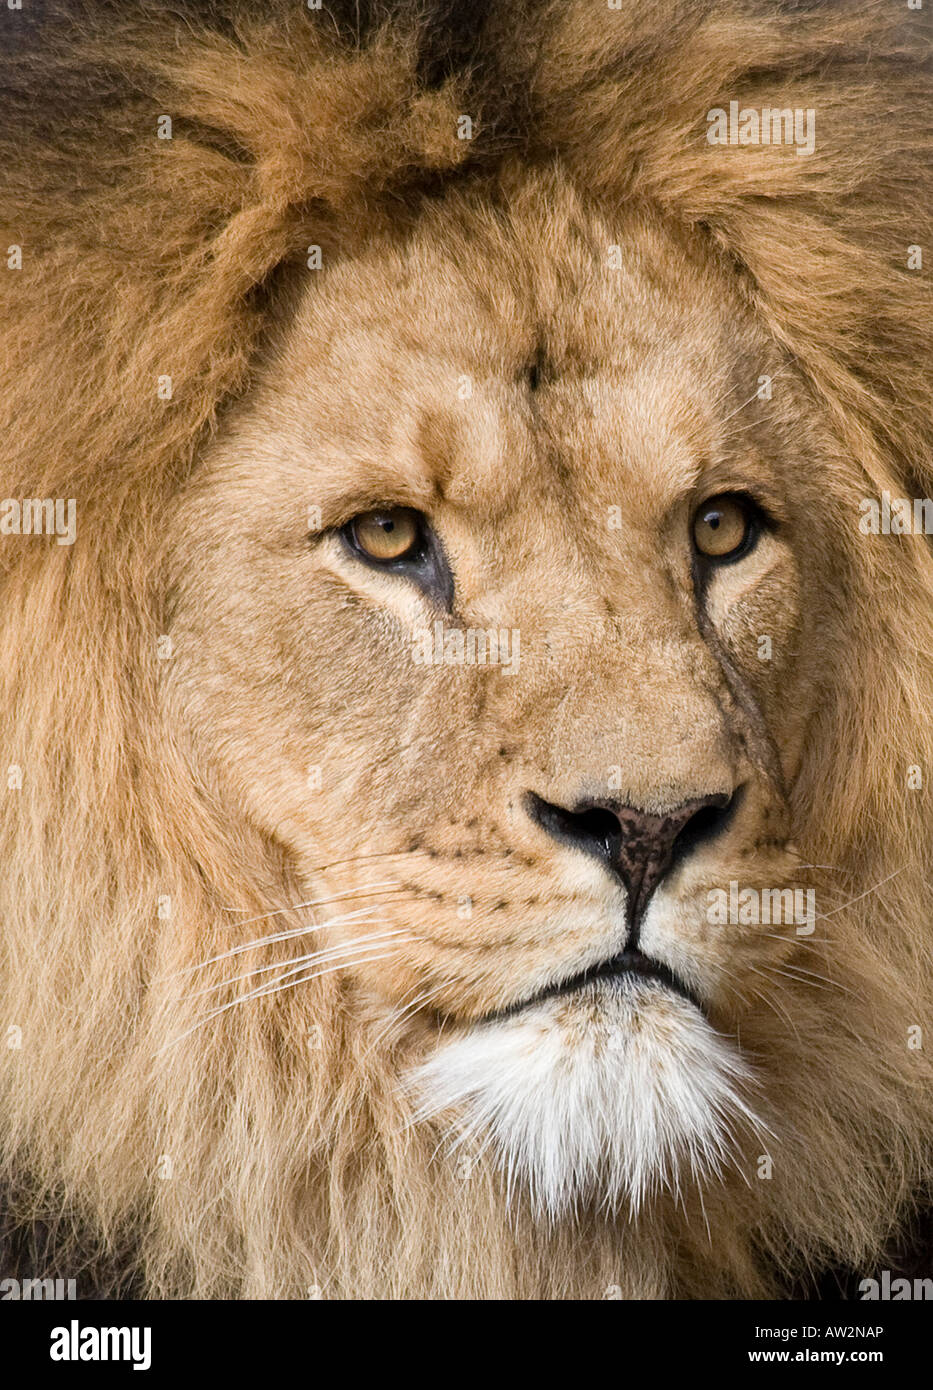 A close-up head shot portrait of a male lion Stock Photo